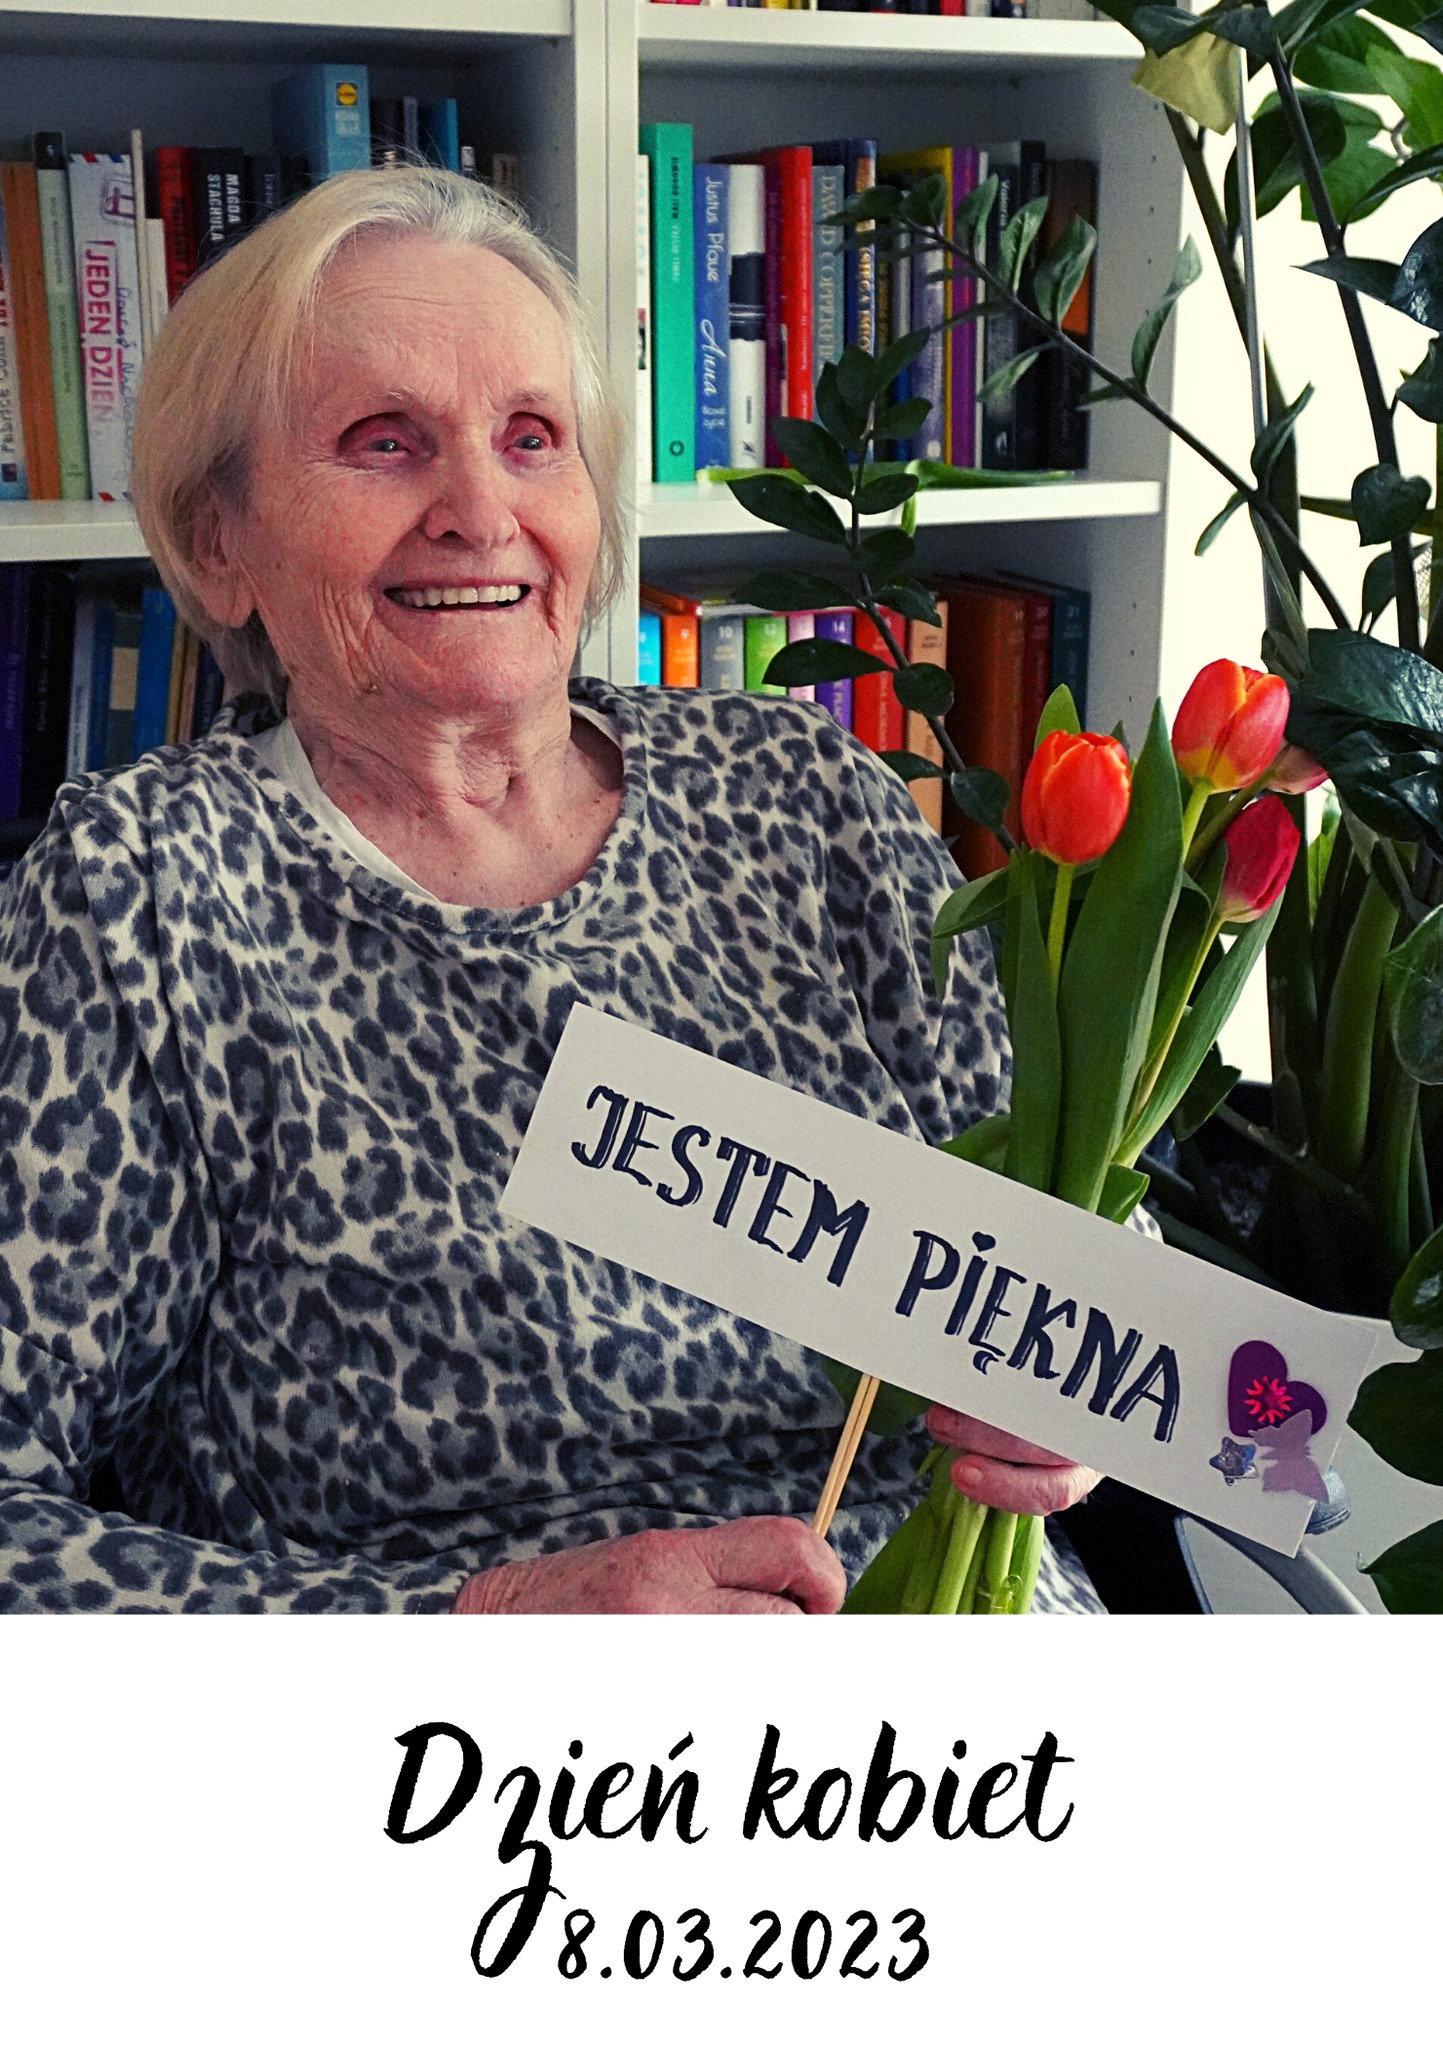 Zdjęcie starsze Pani z kwiatami, która trzyma tabliczkę z napisem "Jestem Piękna".